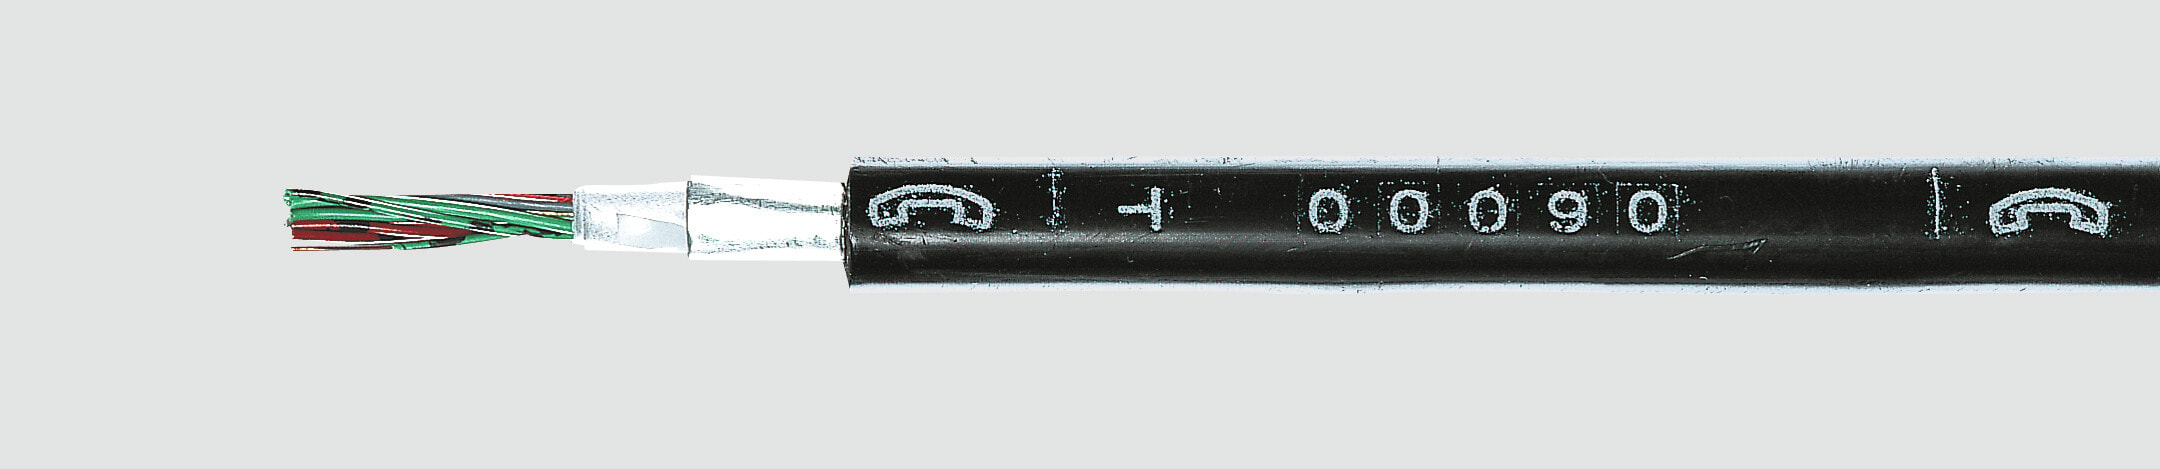 Helukabel 34130 - Low voltage cable - Black - Cooper - 0.8 mm² - 20 kg/km - -20 - 70 °C